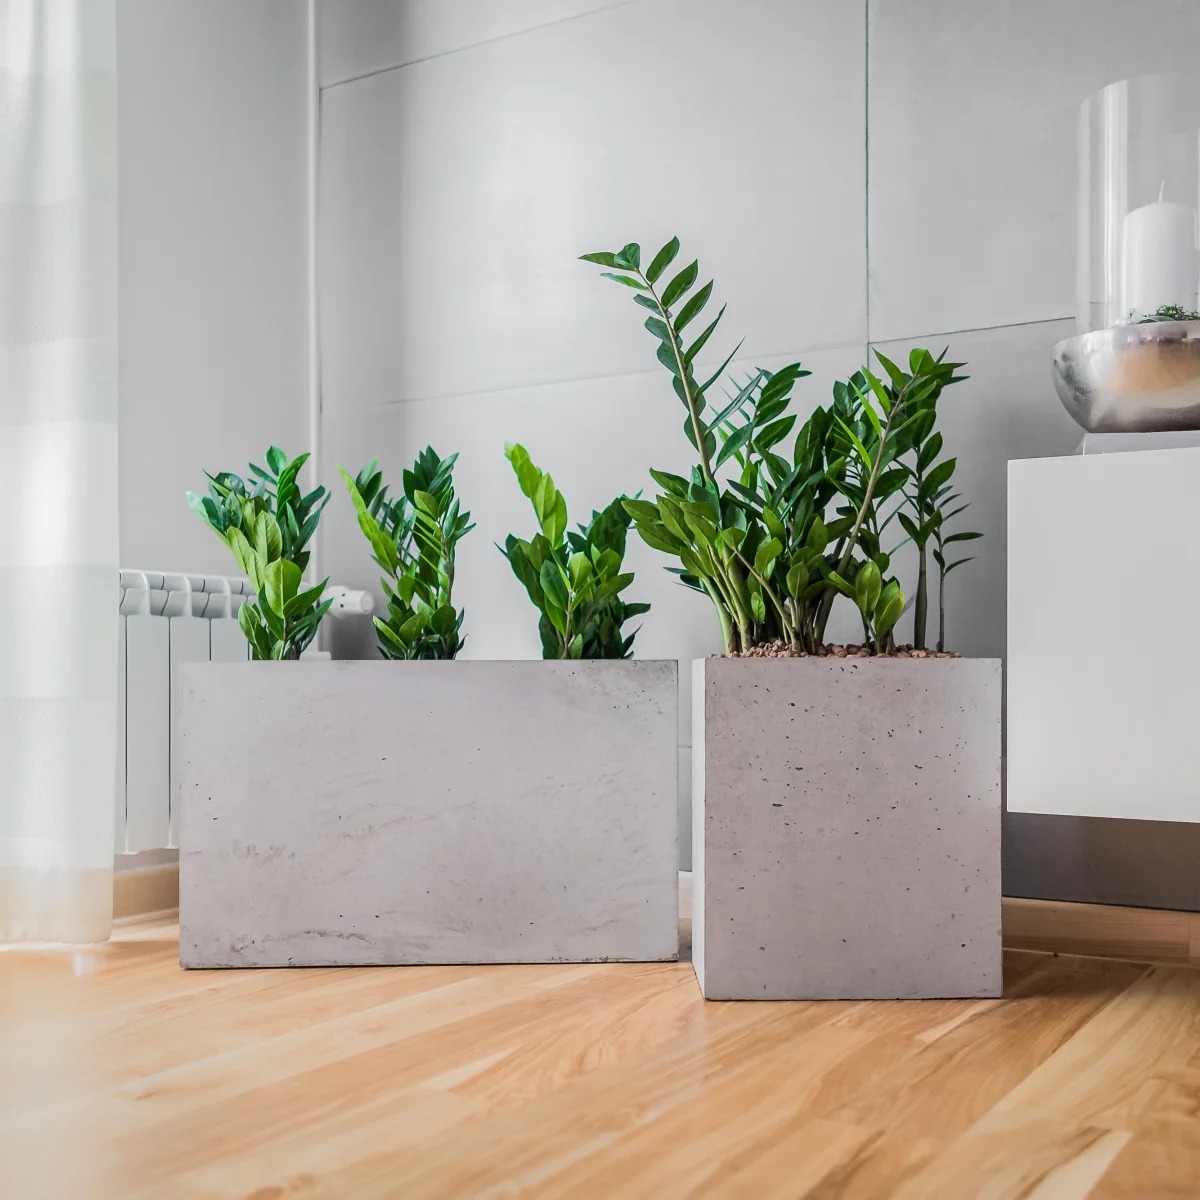 Jak uprawiać i pielęgnować zamiokulkasa? Czy zamiokulkas to idealna roślina do domu i biura?